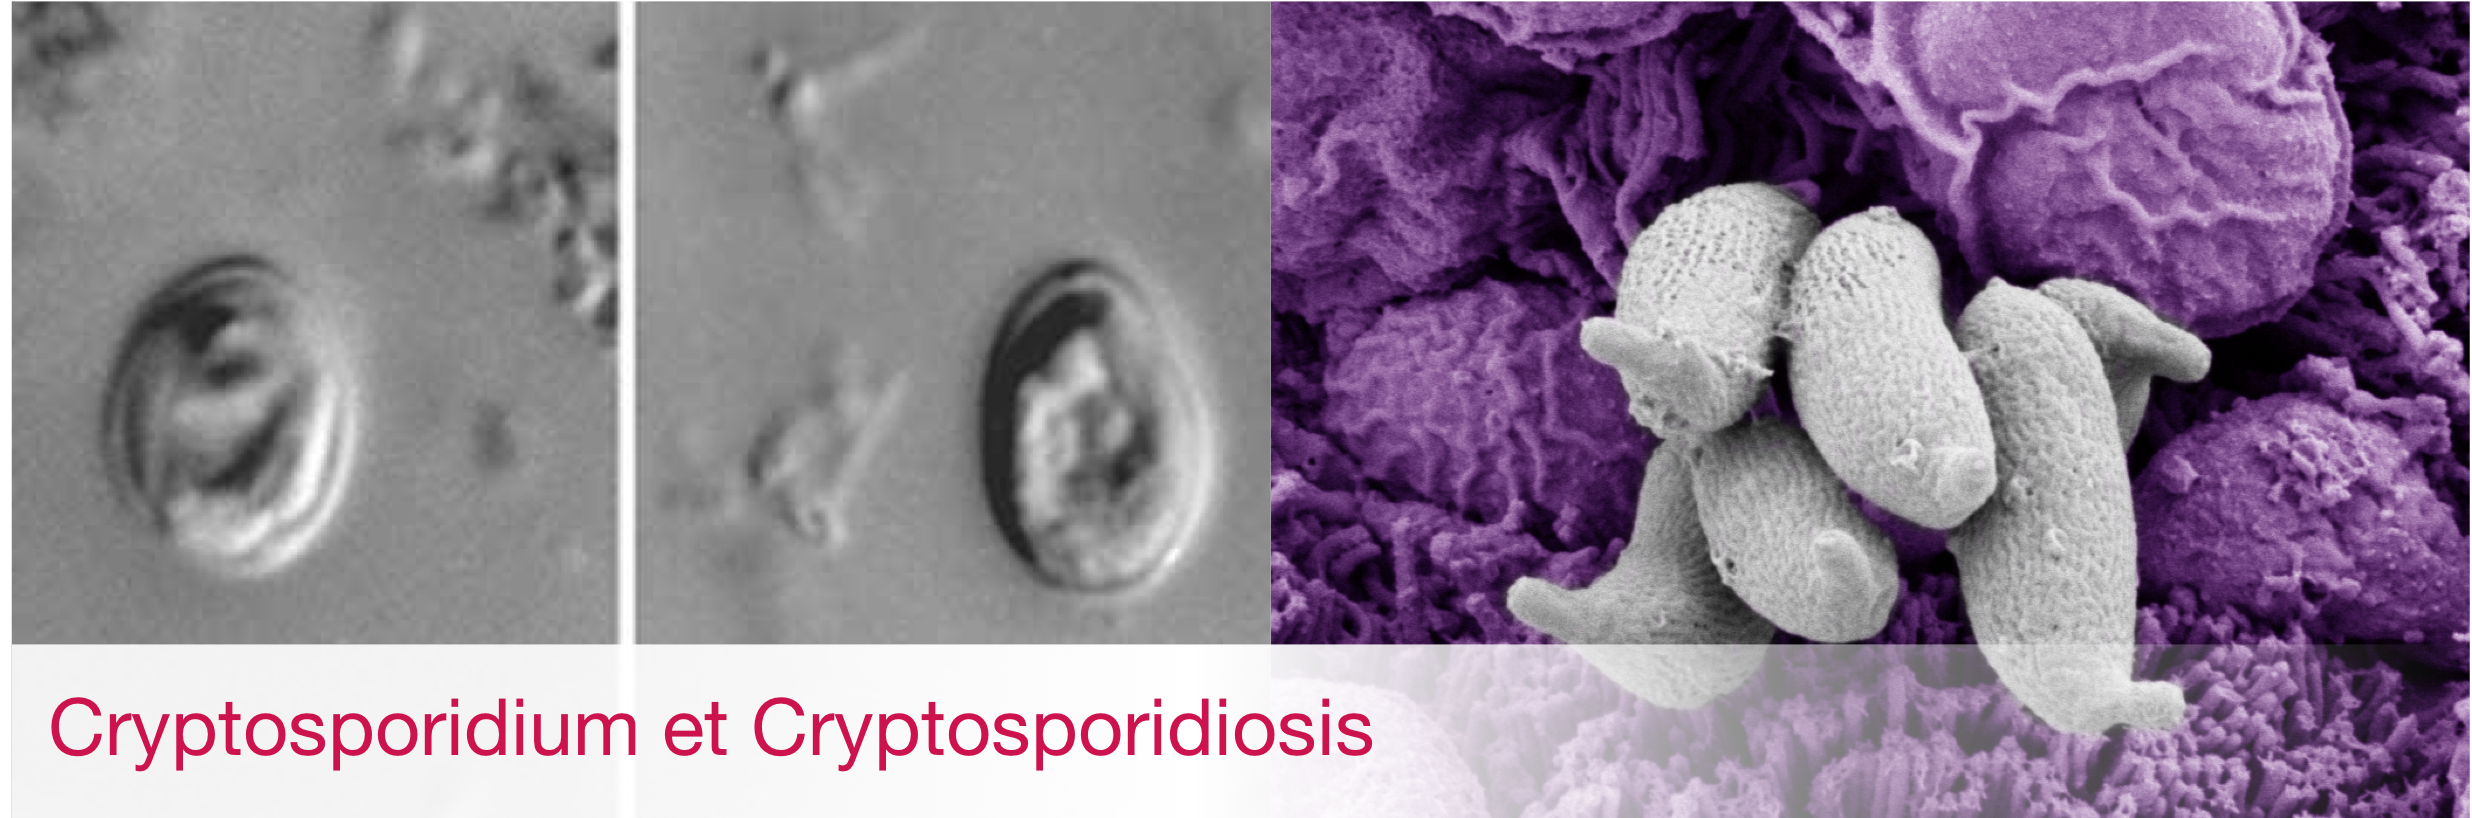 Cryptosporidium et Cryptosporidiosis